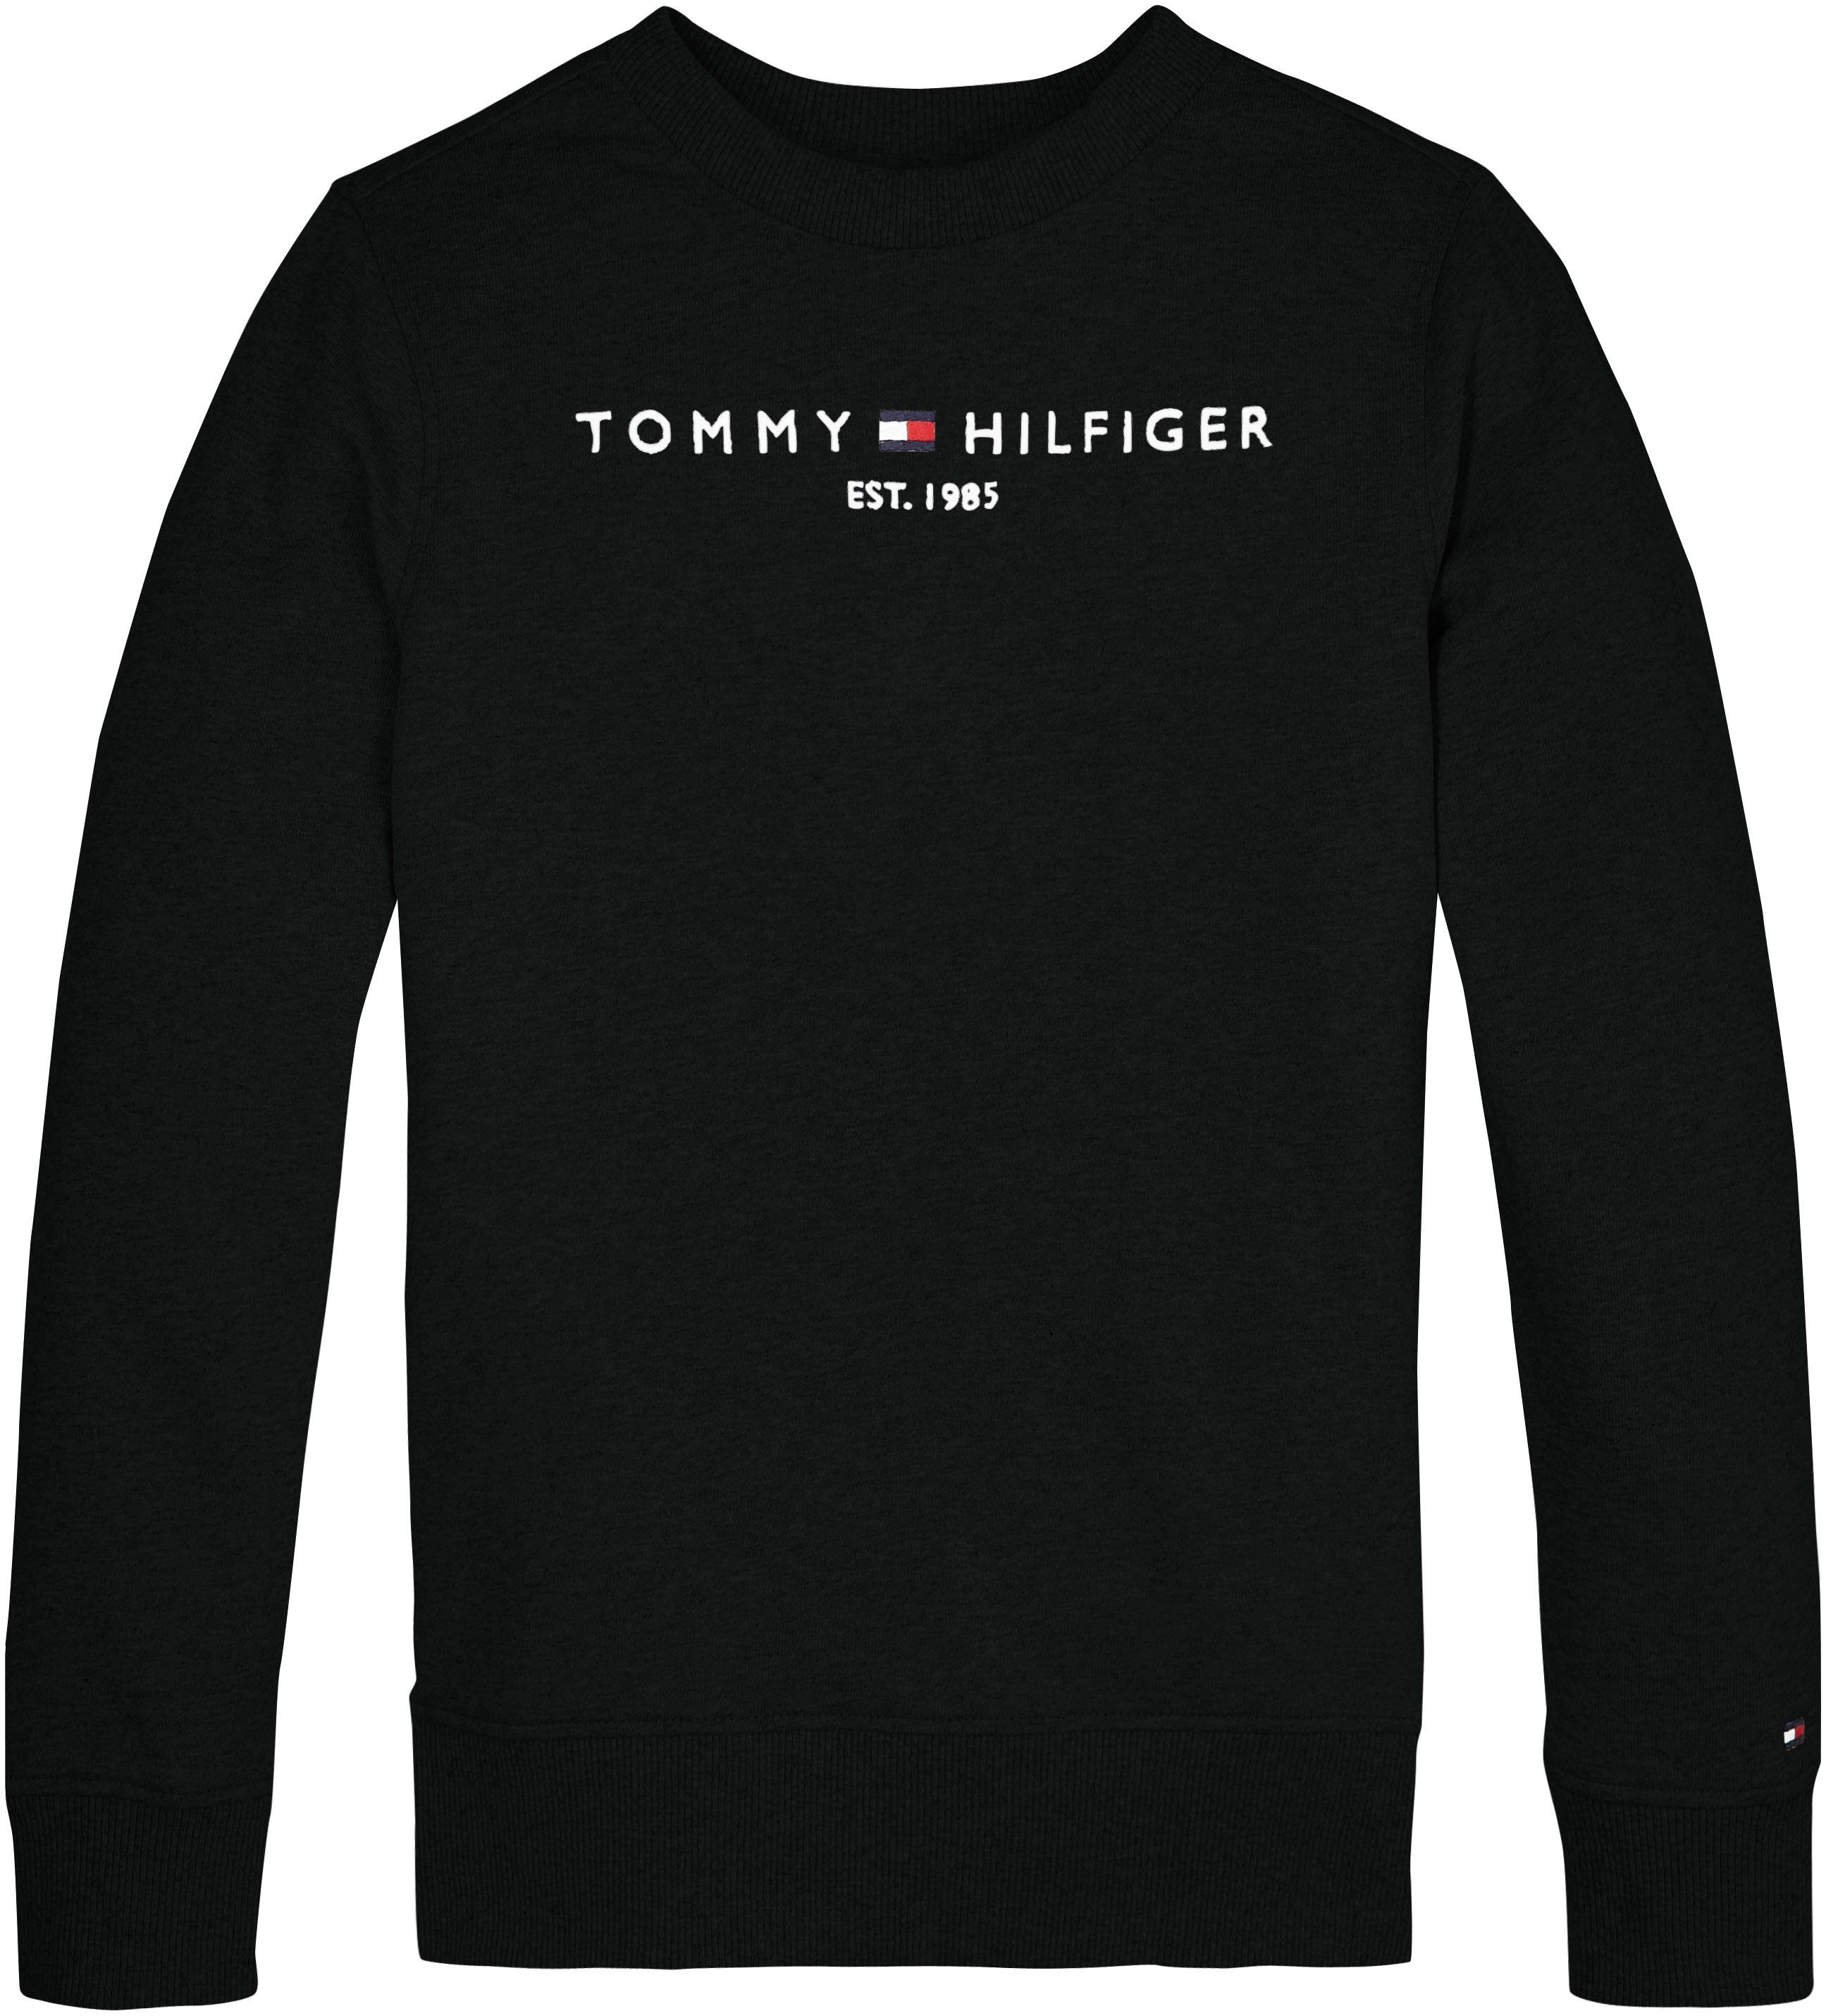 Tommy Hilfiger Sweatshirt ESSENTIAL Jungen Kinder Junior MiniMe,für und SWEATSHIRT Mädchen Kids